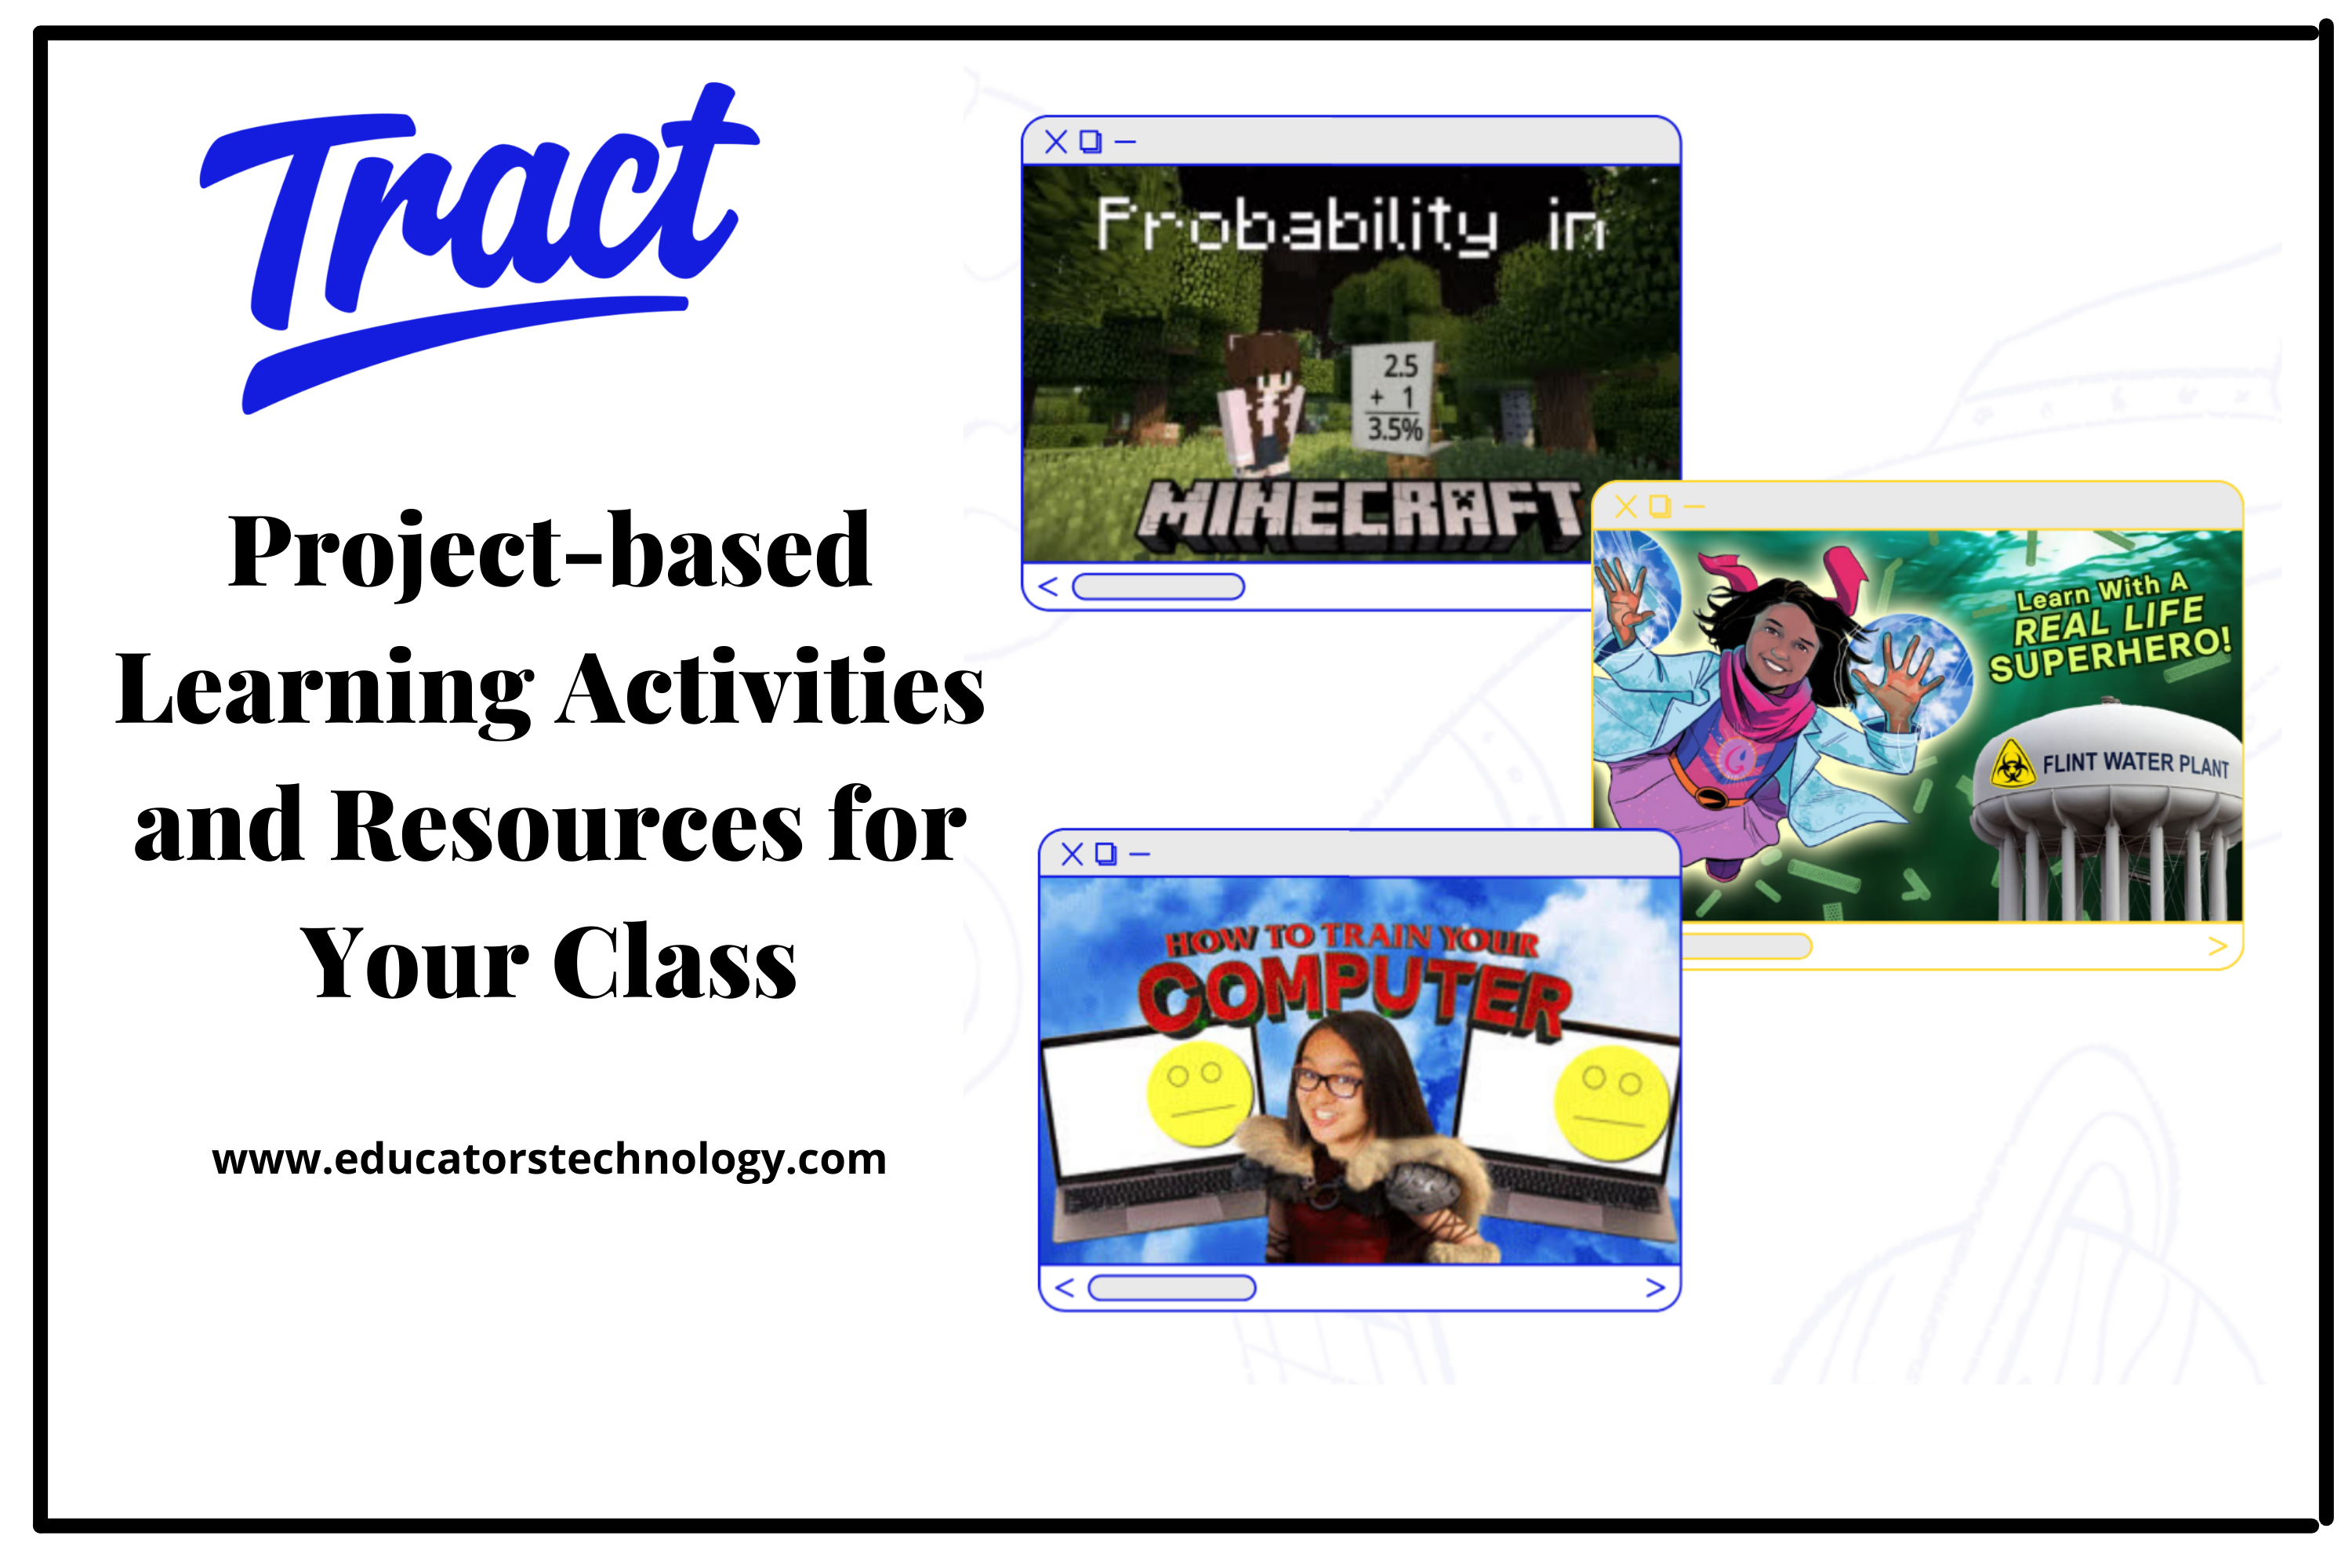 Tract proporciona actividades y recursos de aprendizaje basados ​​en proyectos para su clase